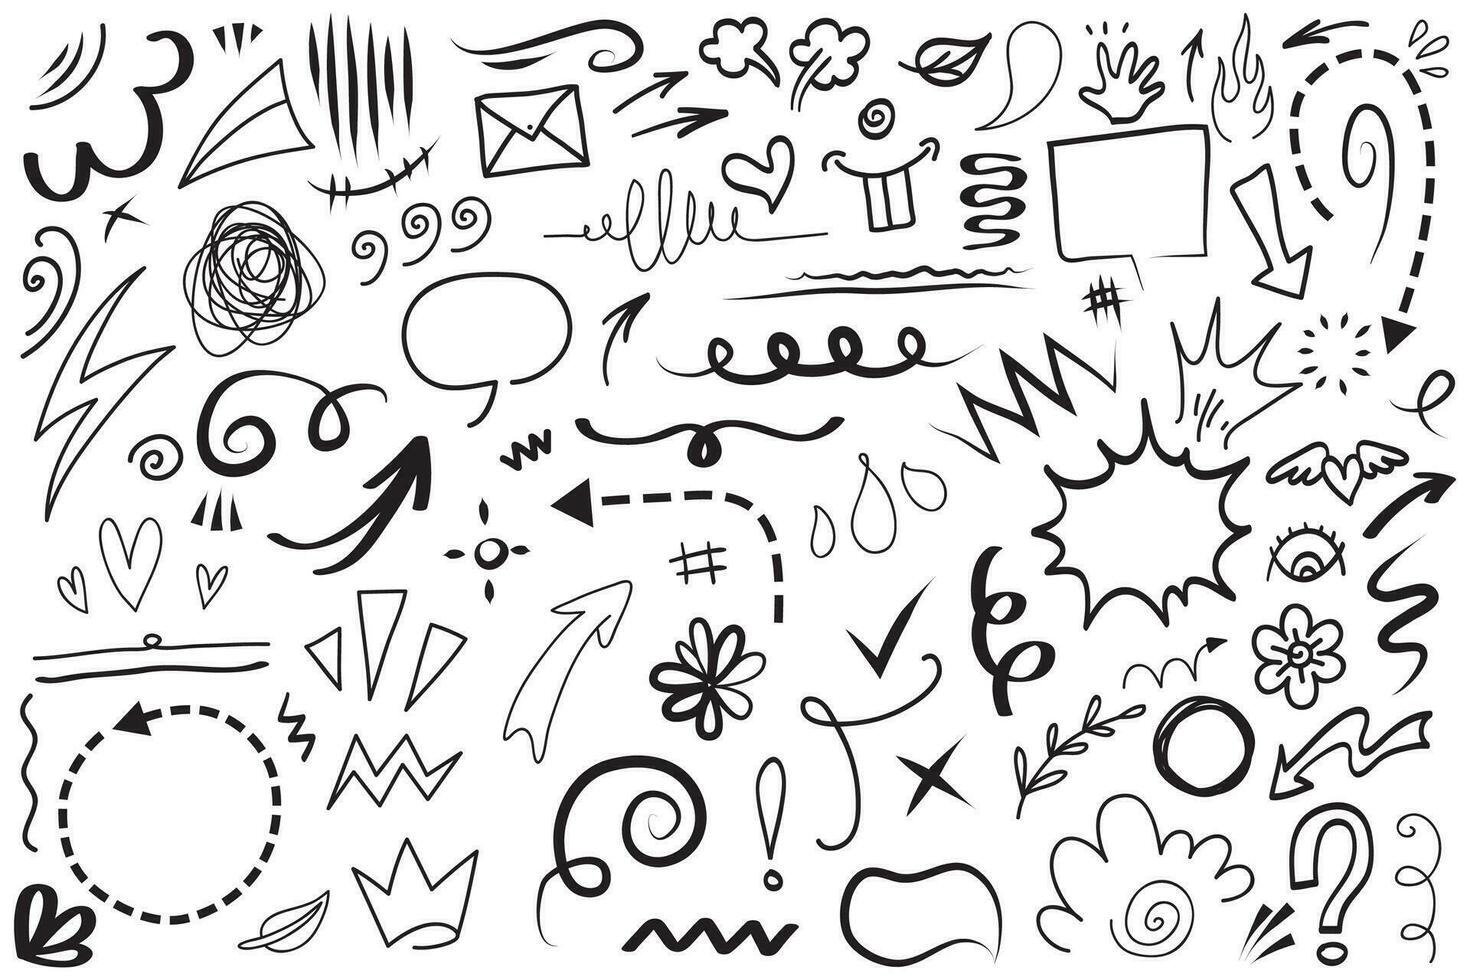 vektor uppsättning handritade tecknade uttryck tecken doodle, kurva riktningspilar, uttryckssymbol effekter designelement, tecknad karaktär känslor symboler, söta dekorativa penseldrag linjer.